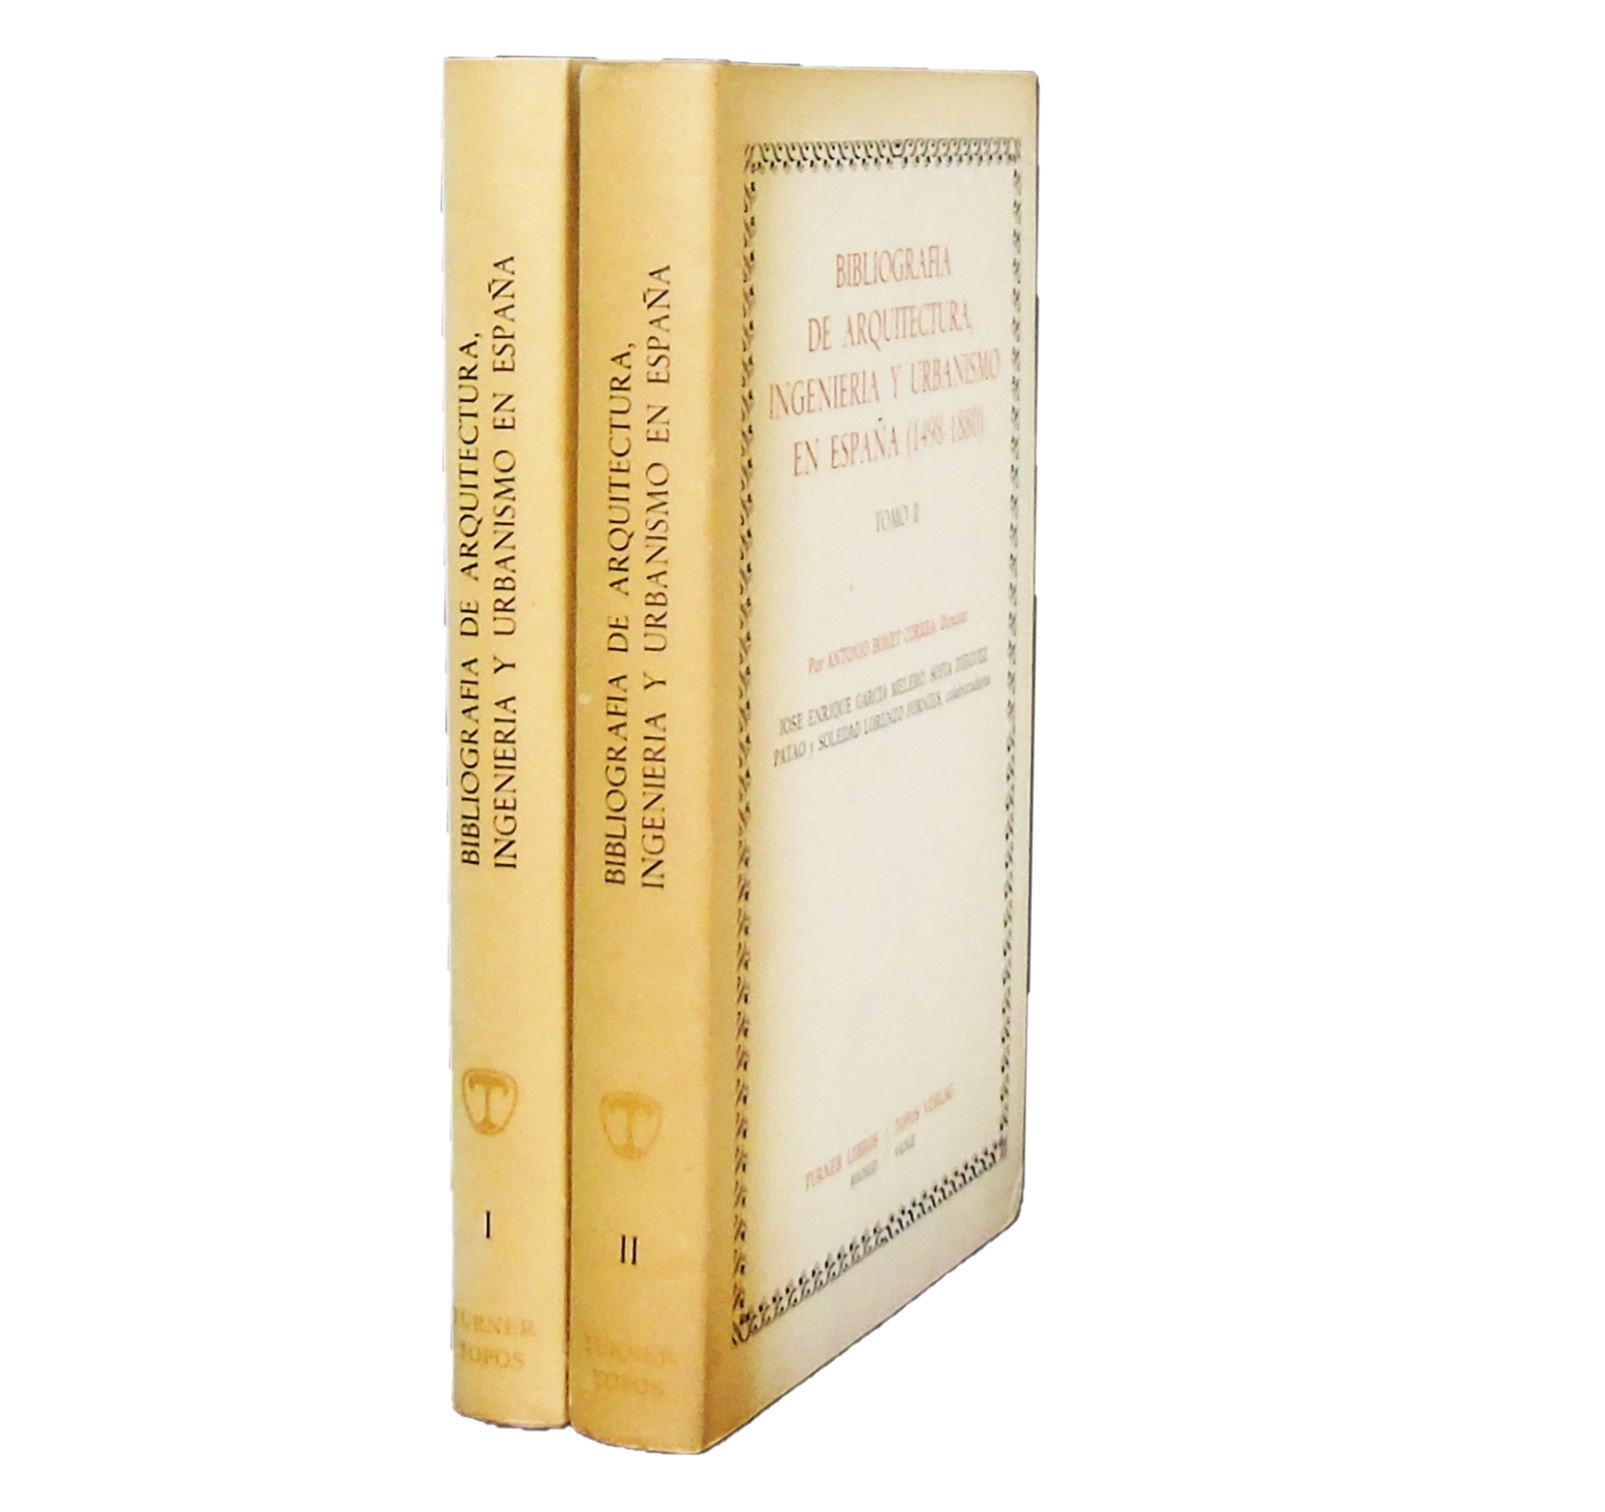 BIBLIOGRAFIA DE ARQUITECTURA, INGENIERIA Y URBANISMO EN ESPAÑA (1498-1880)